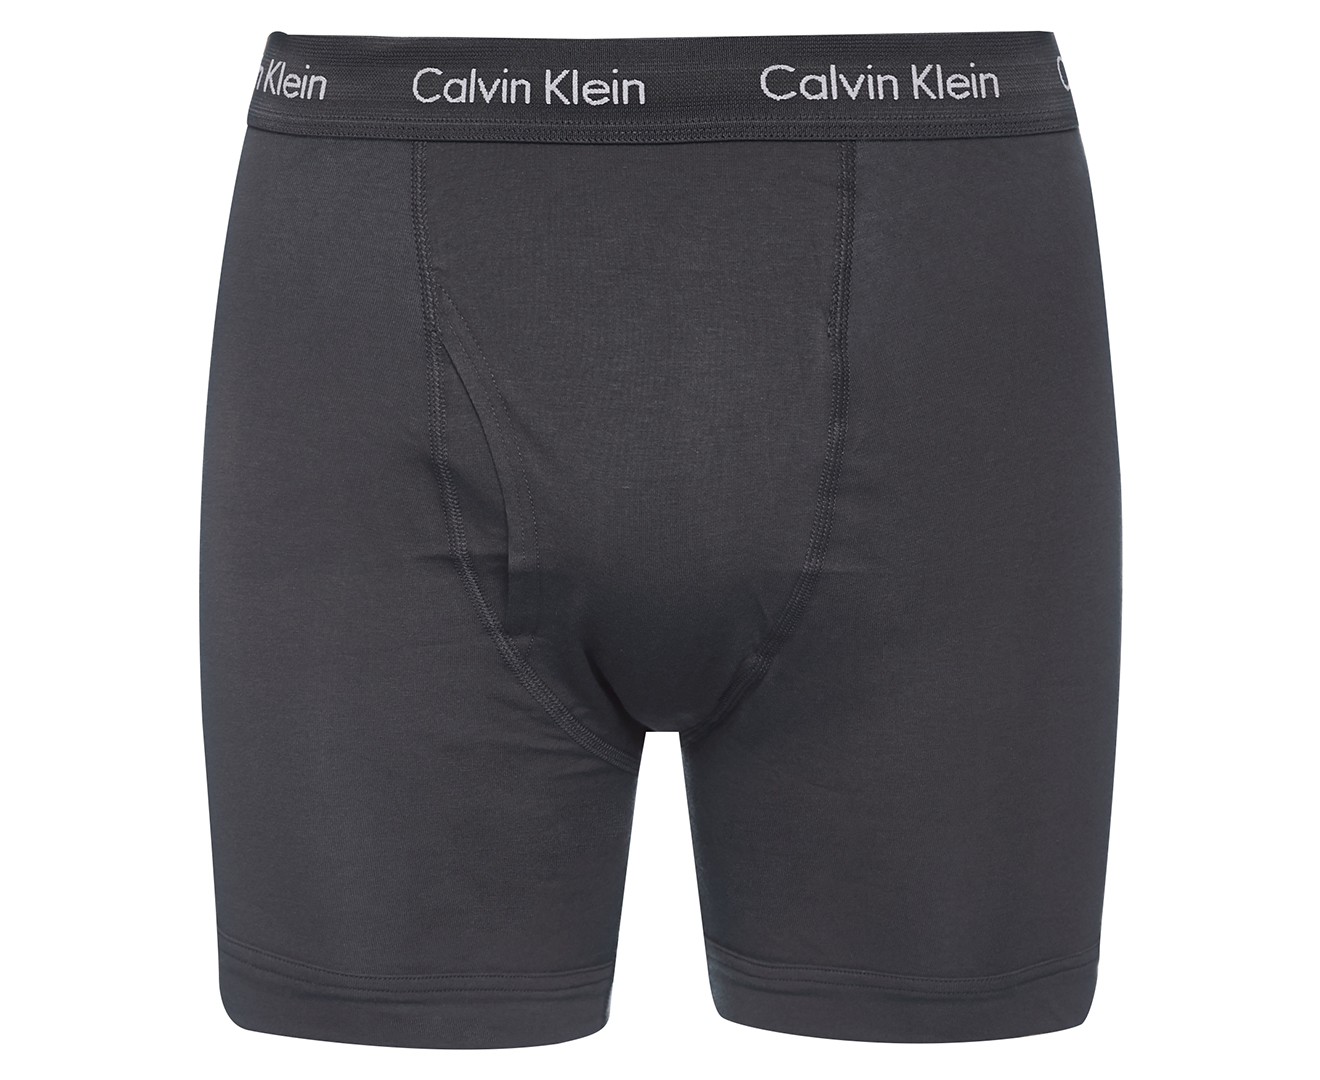 Calvin Klein Mens Cotton Stretch Boxer Brief 3 Pack Multi Nz